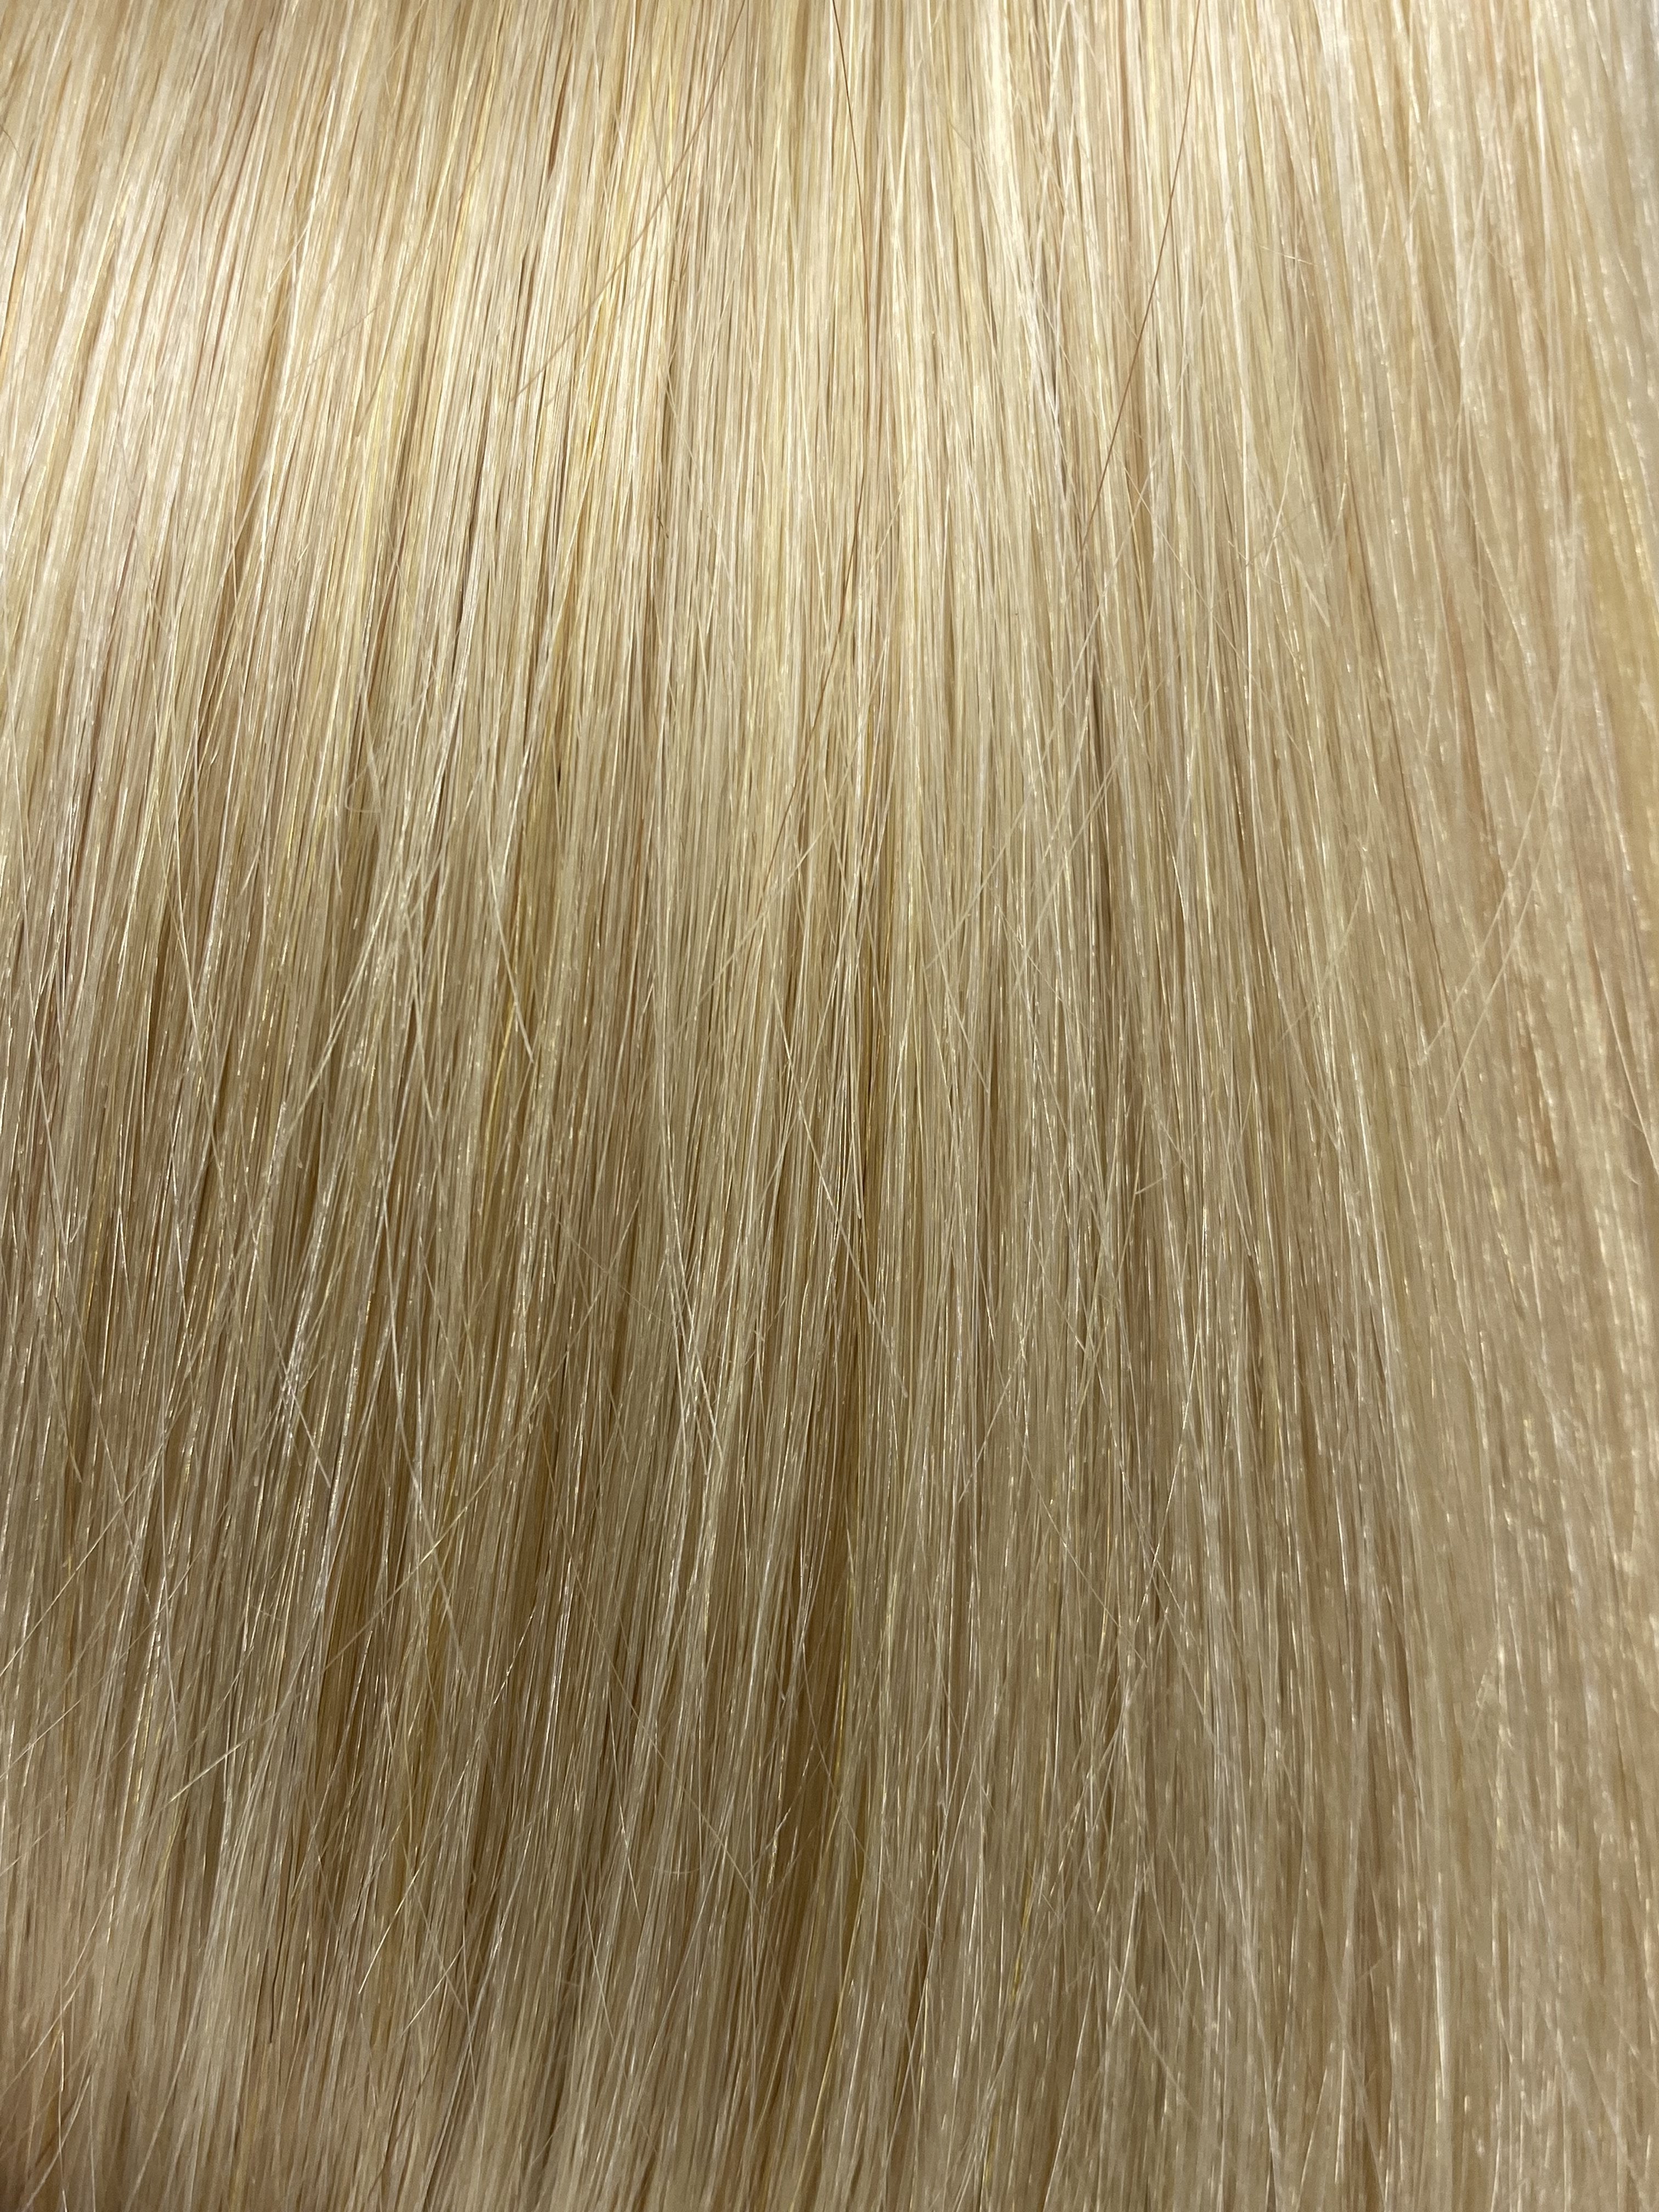 Velo Sale #22 - 16 inches - Platinum Blonde